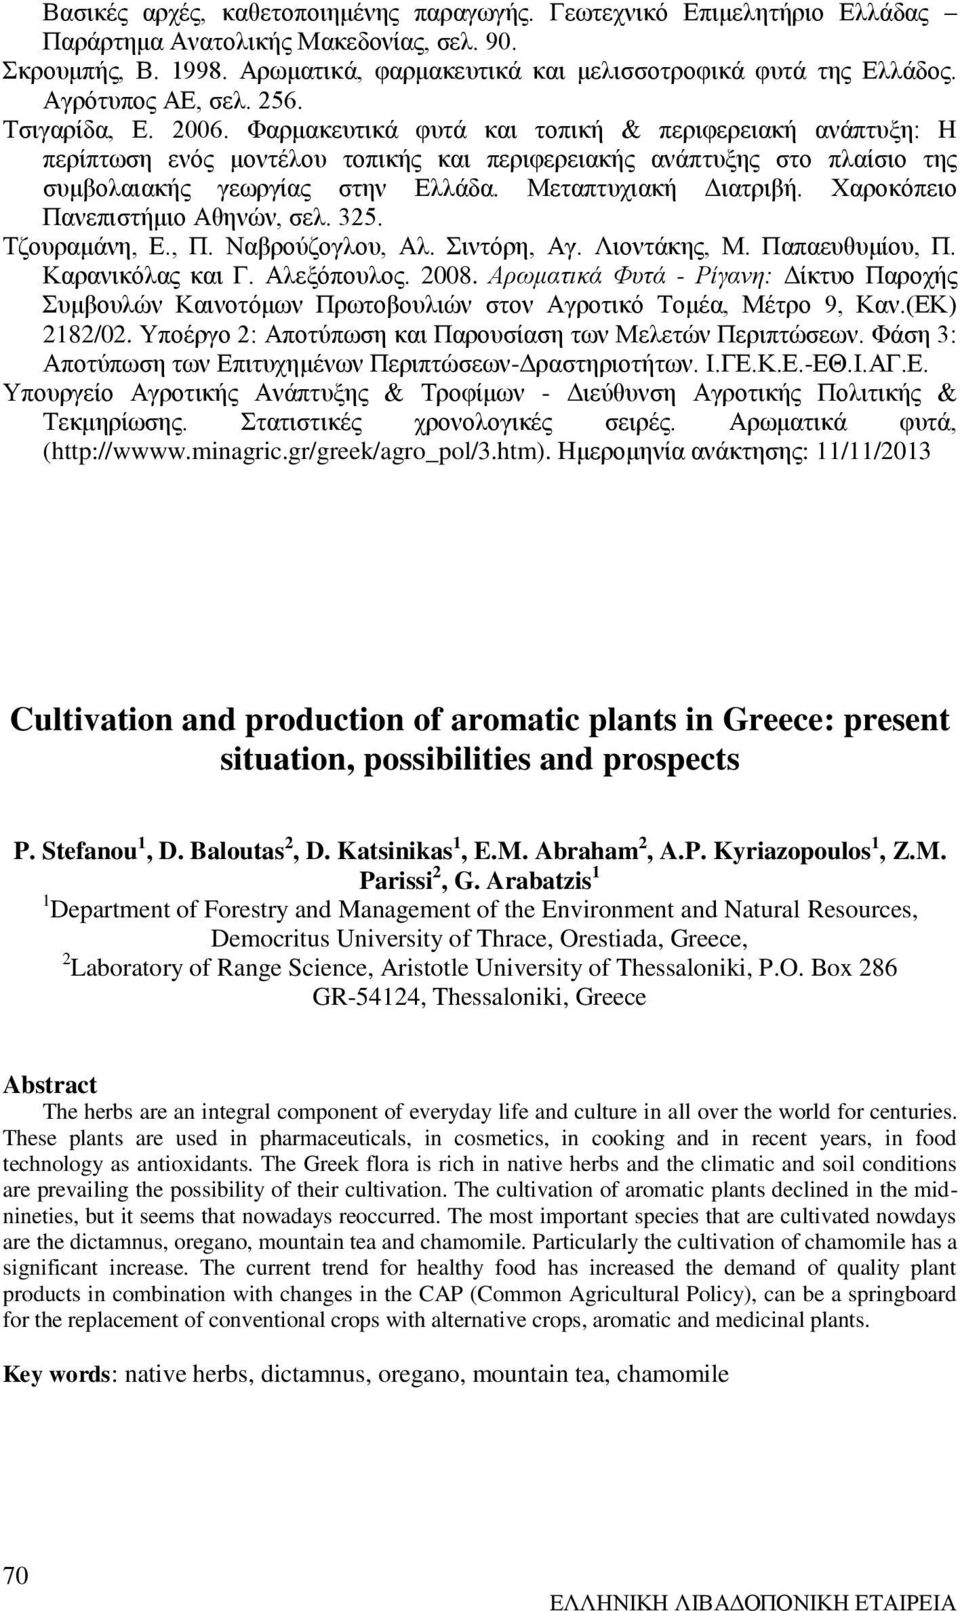 Φαρμακευτικά φυτά και τοπική & περιφερειακή ανάπτυξη: Η περίπτωση ενός μοντέλου τοπικής και περιφερειακής ανάπτυξης στο πλαίσιο της συμβολαιακής γεωργίας στην Ελλάδα. Μεταπτυχιακή Διατριβή.